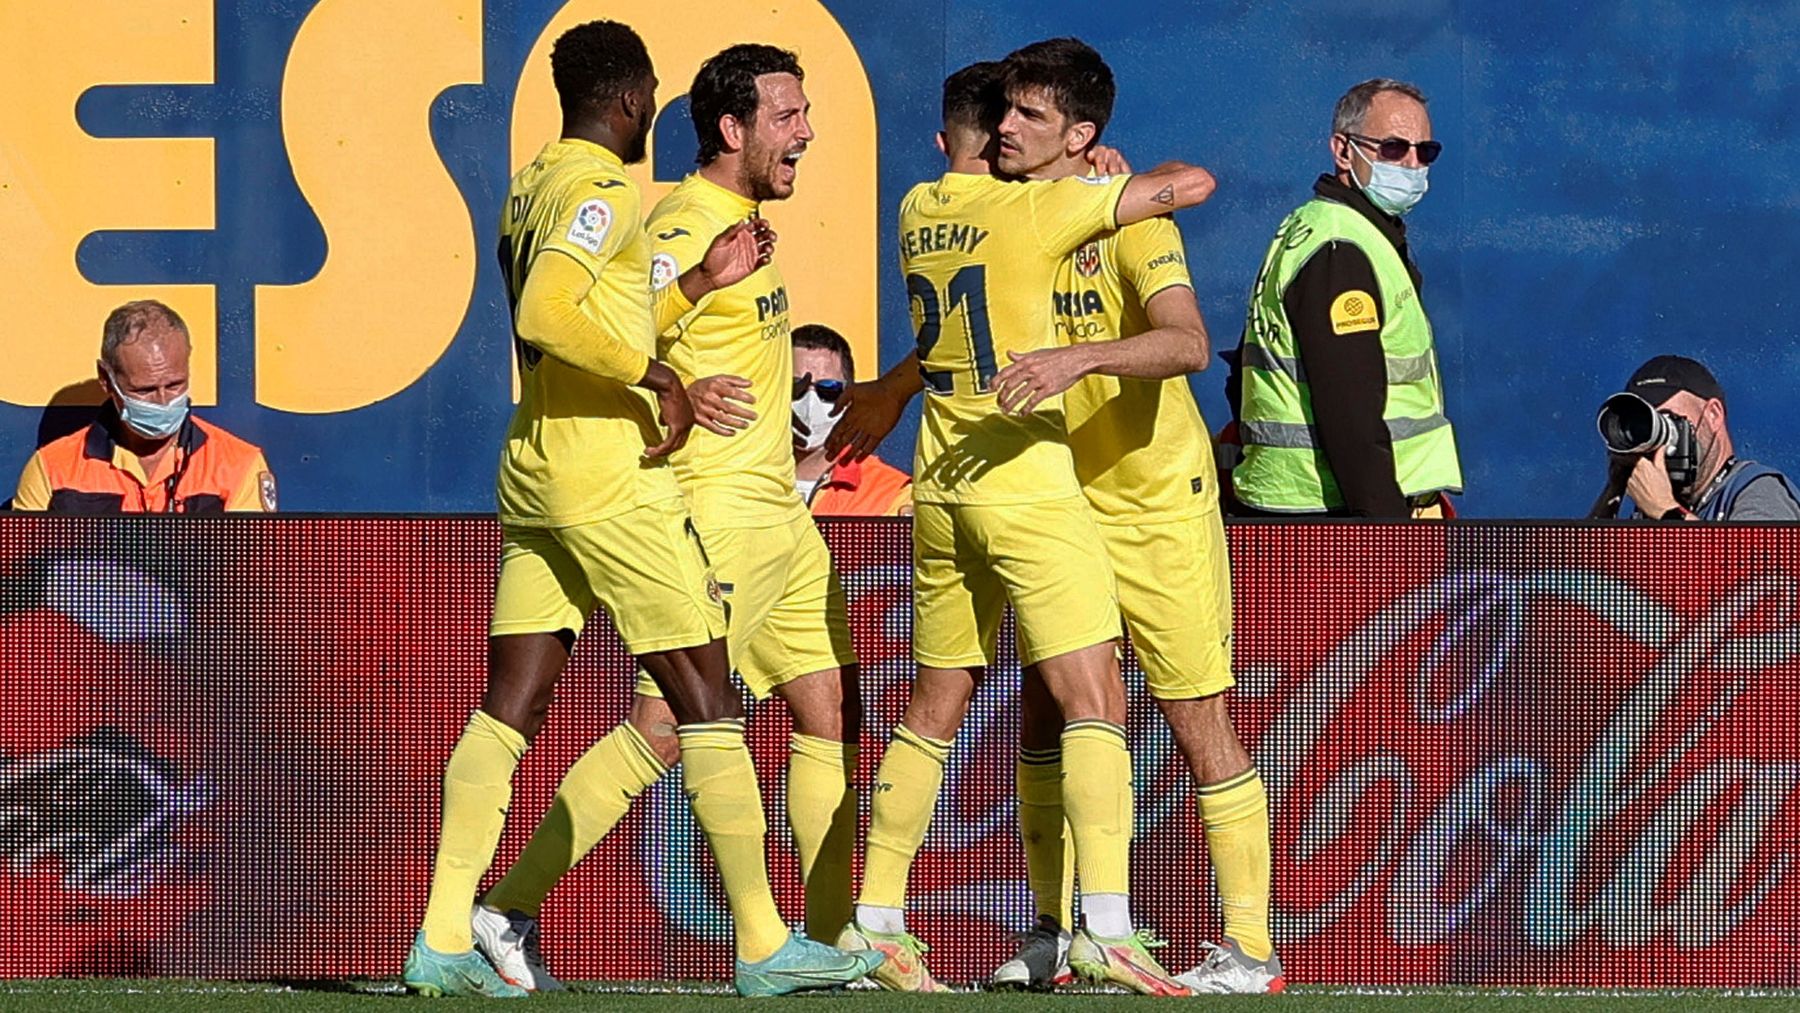 El Villarreal celebra un gol. (EFE)